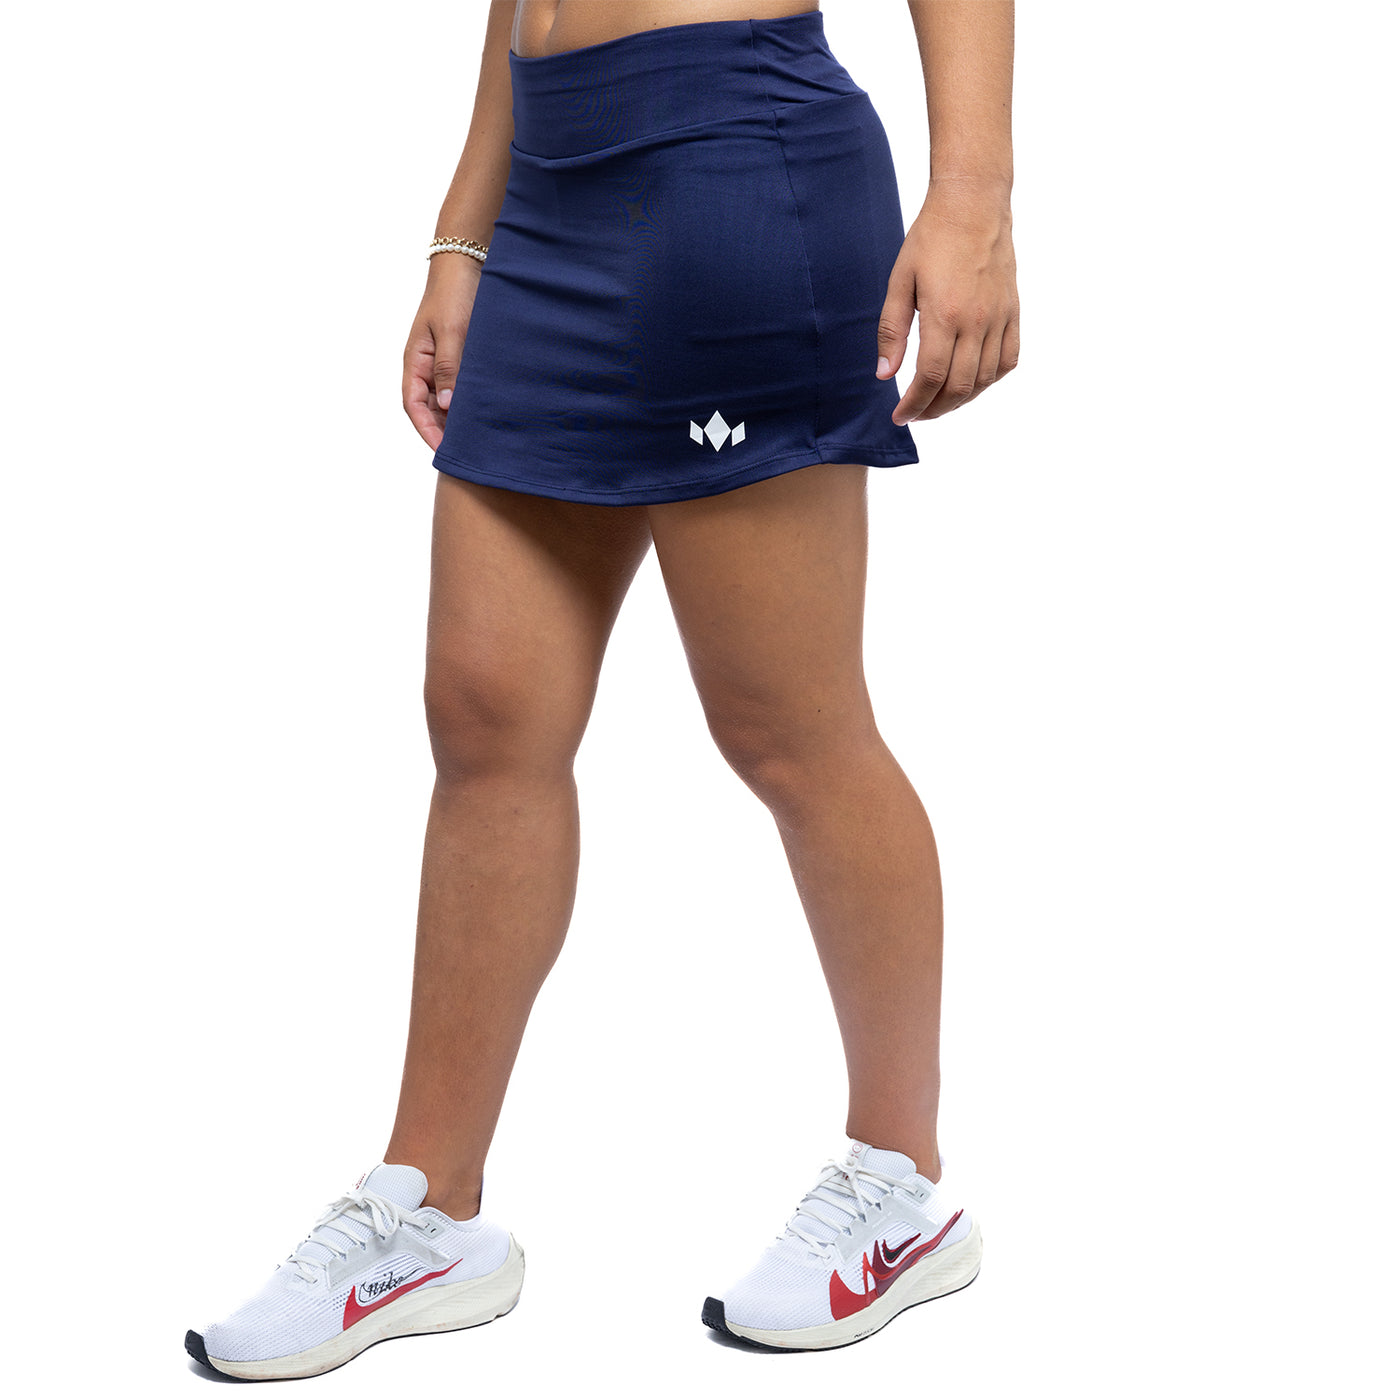 Women's Essential Tennis Skirt